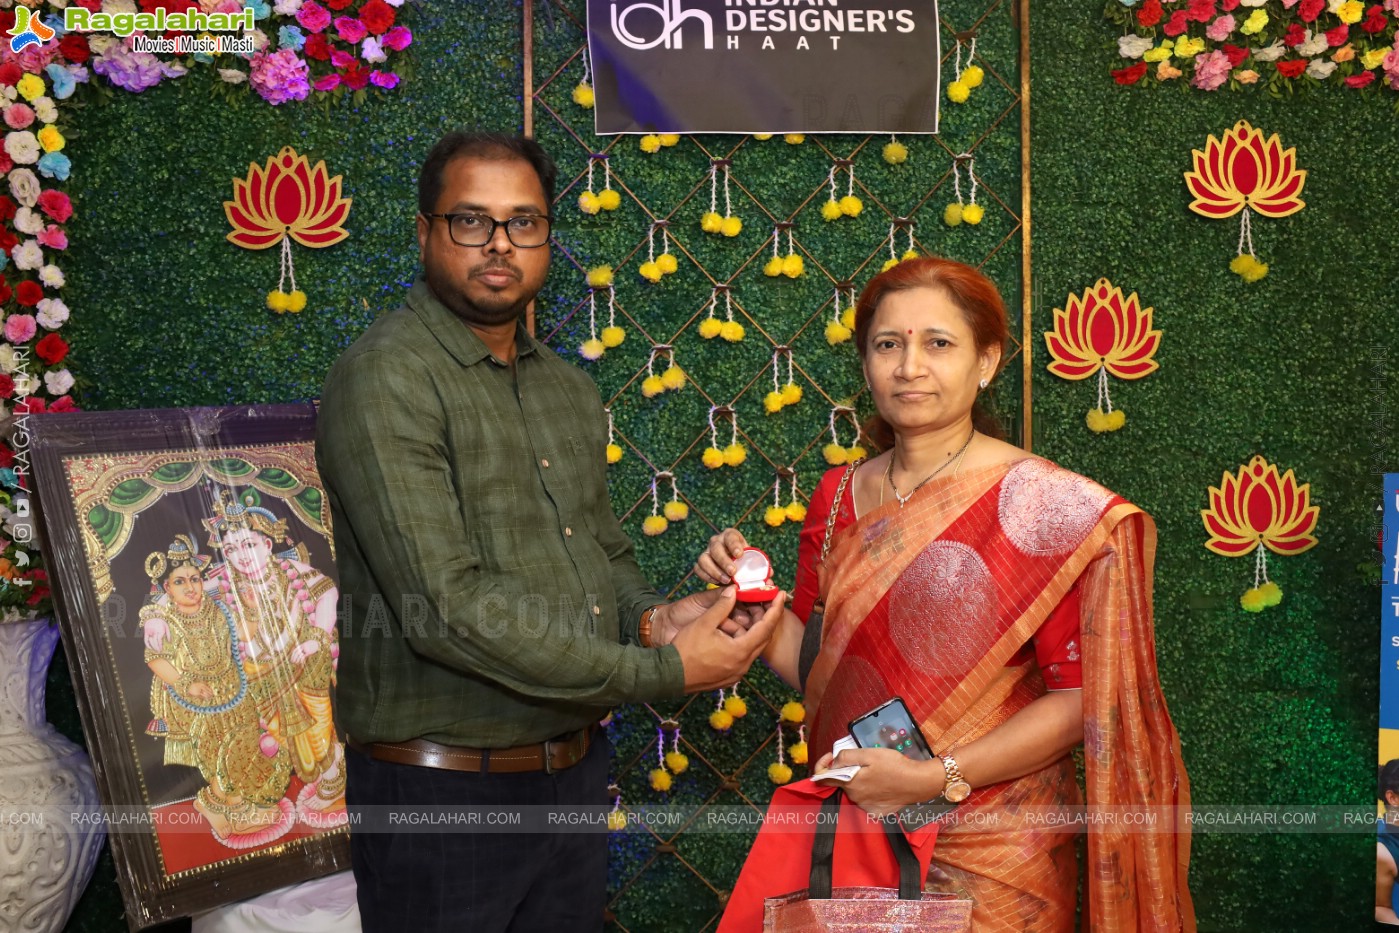 Indian Designer’s Haat Premium Fashion & Lifestyle Exhibition in Hyderabad